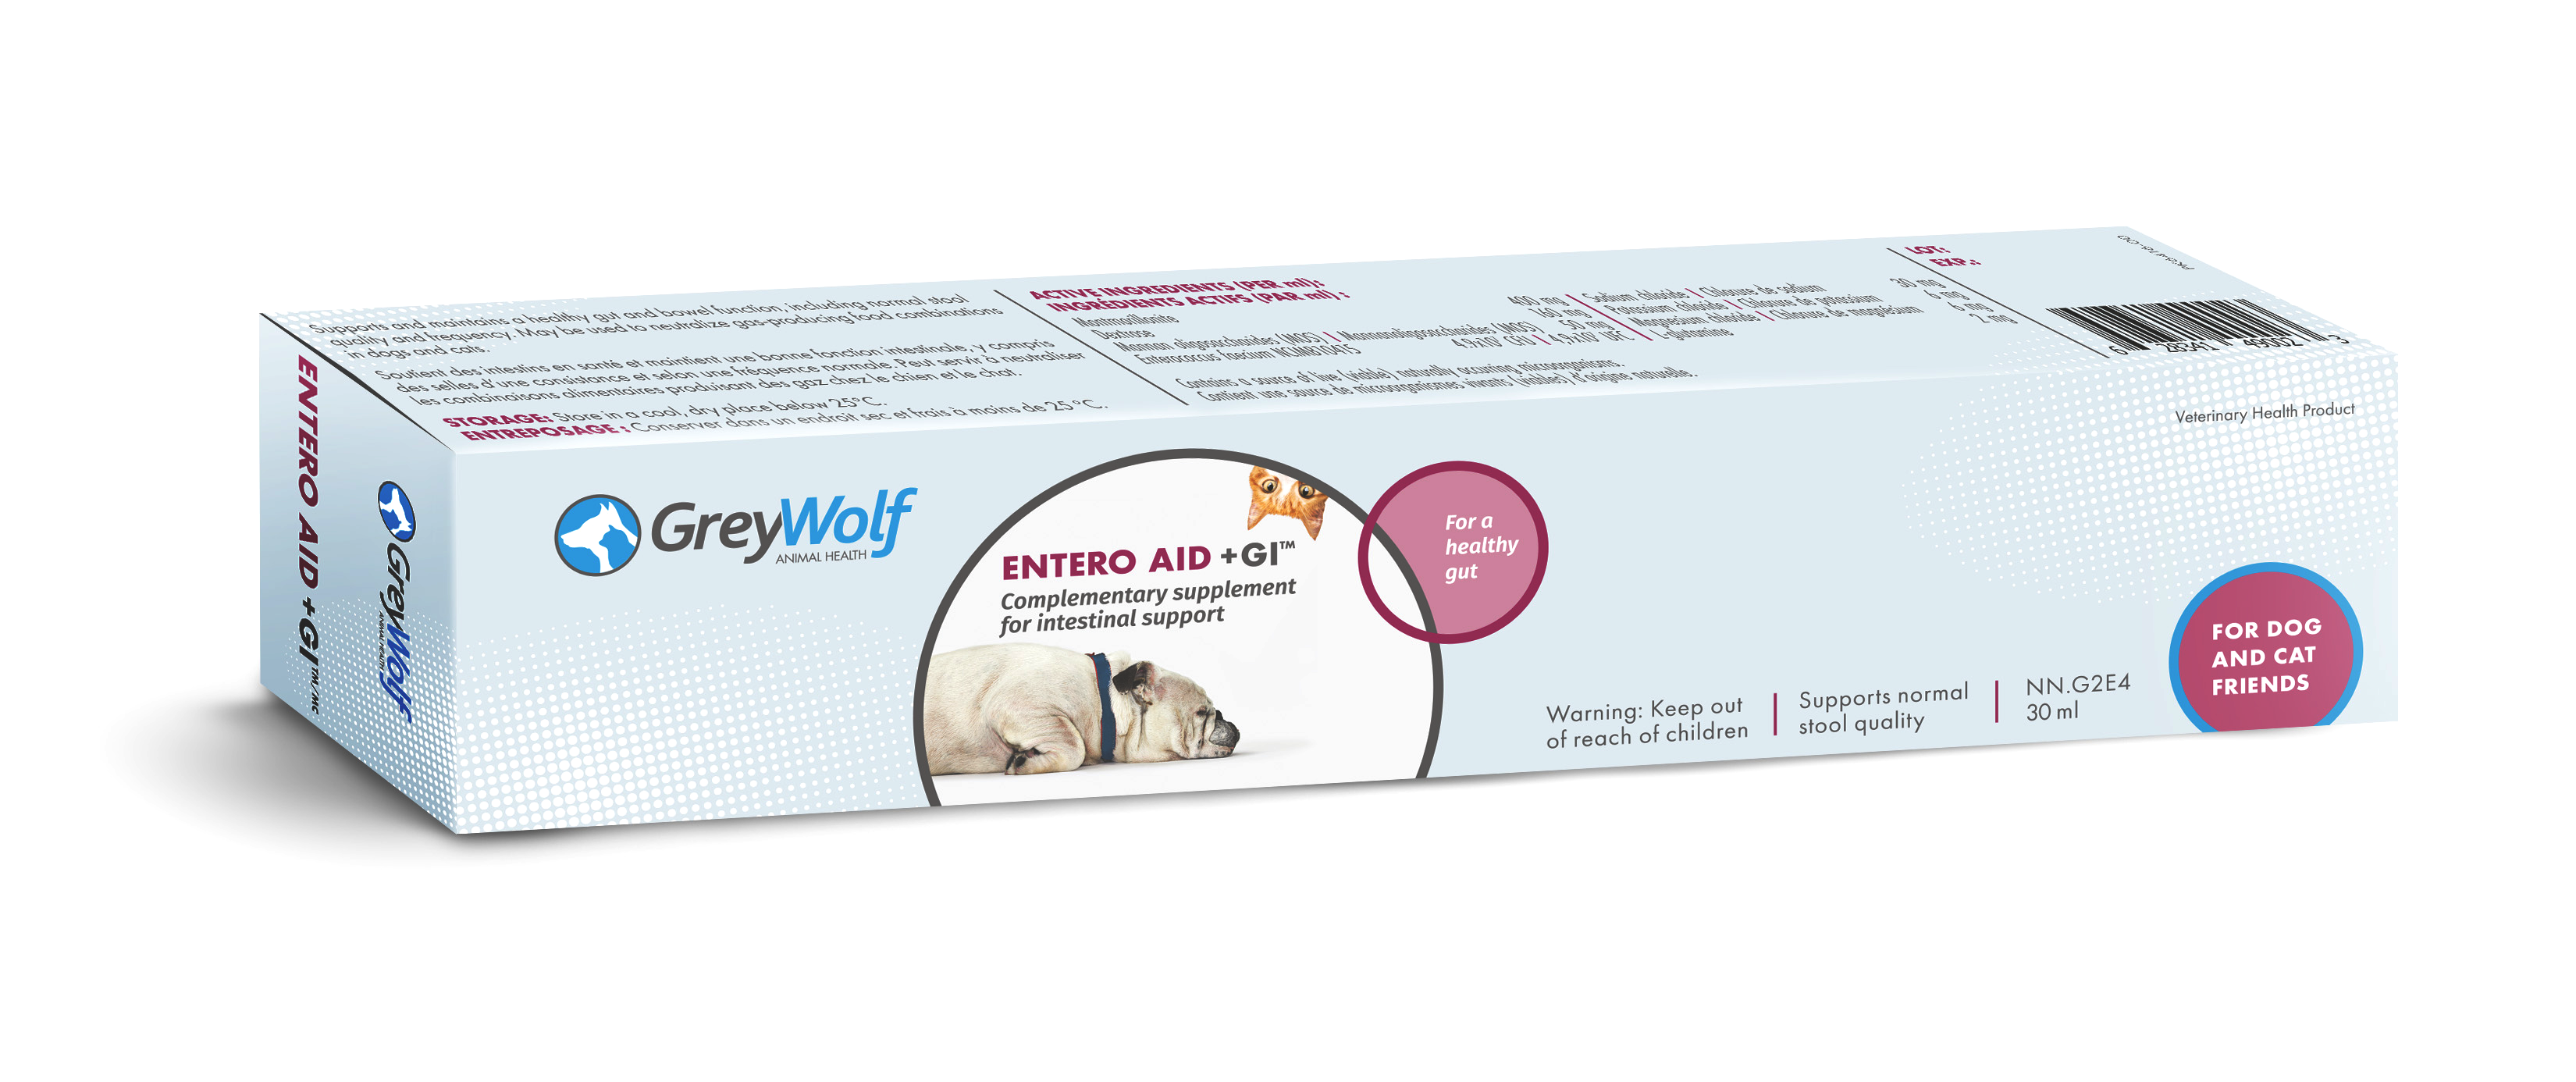 GreyWolf Veterinary Ads Mackie Biernacki